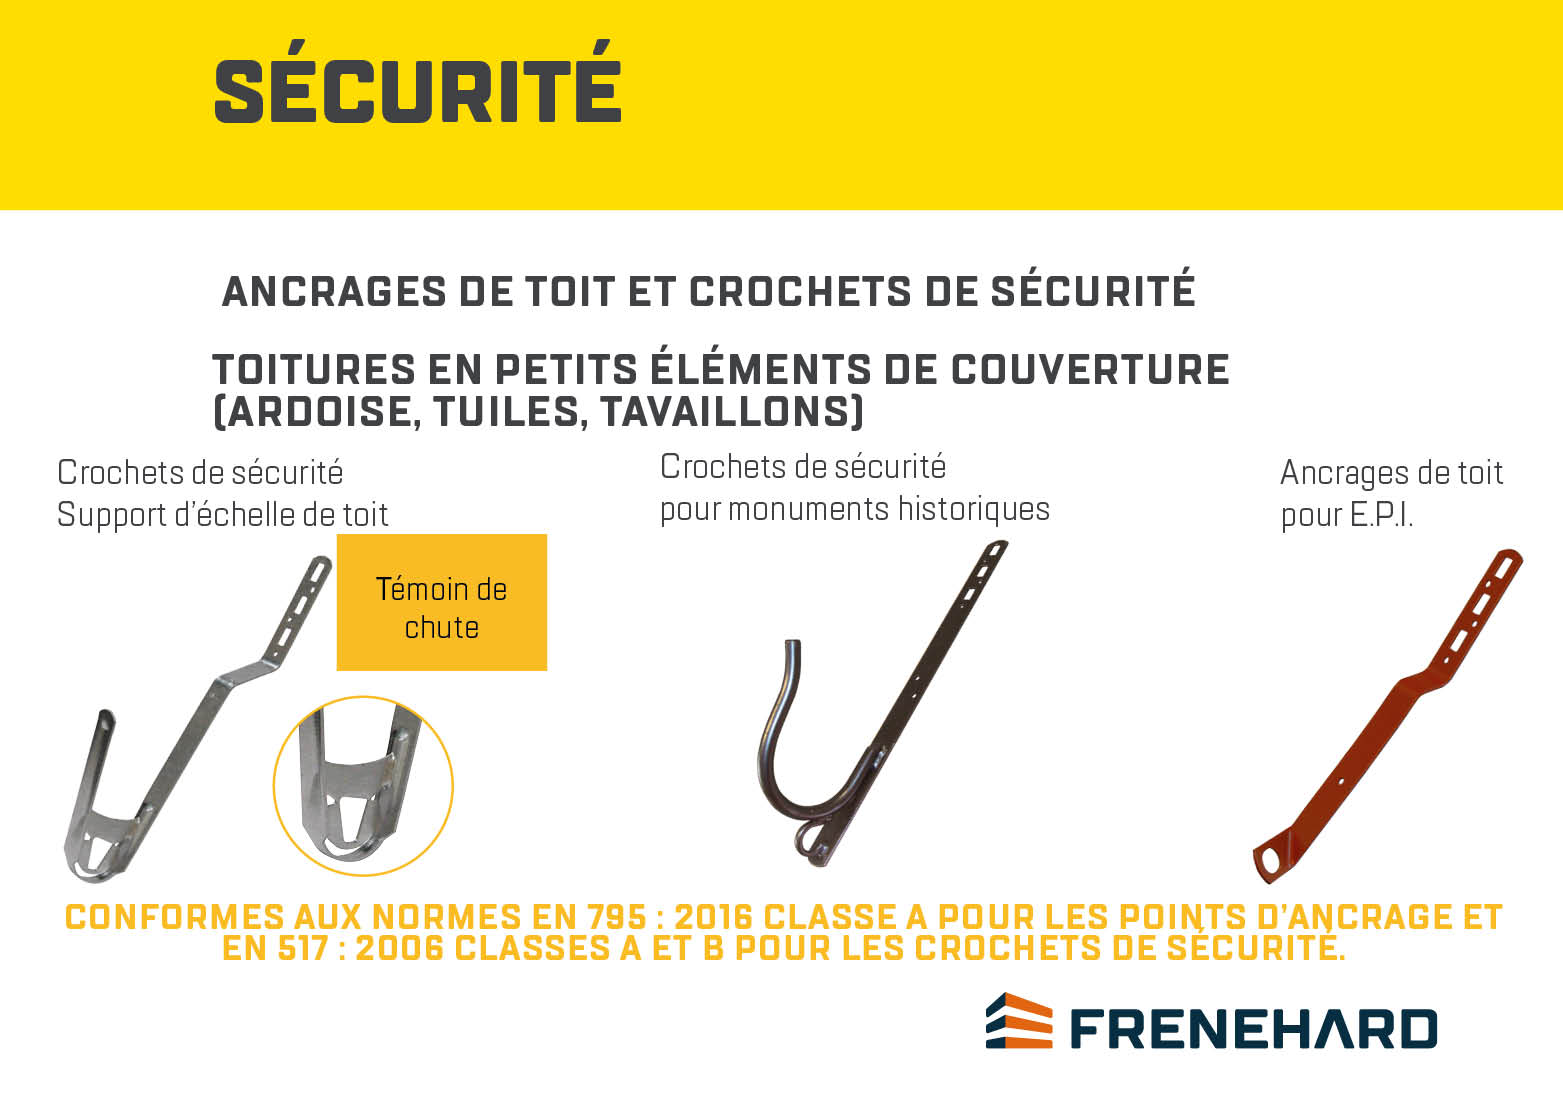 Solutions_Sécurité-Ancrages_FRENEHARD_1.jpg